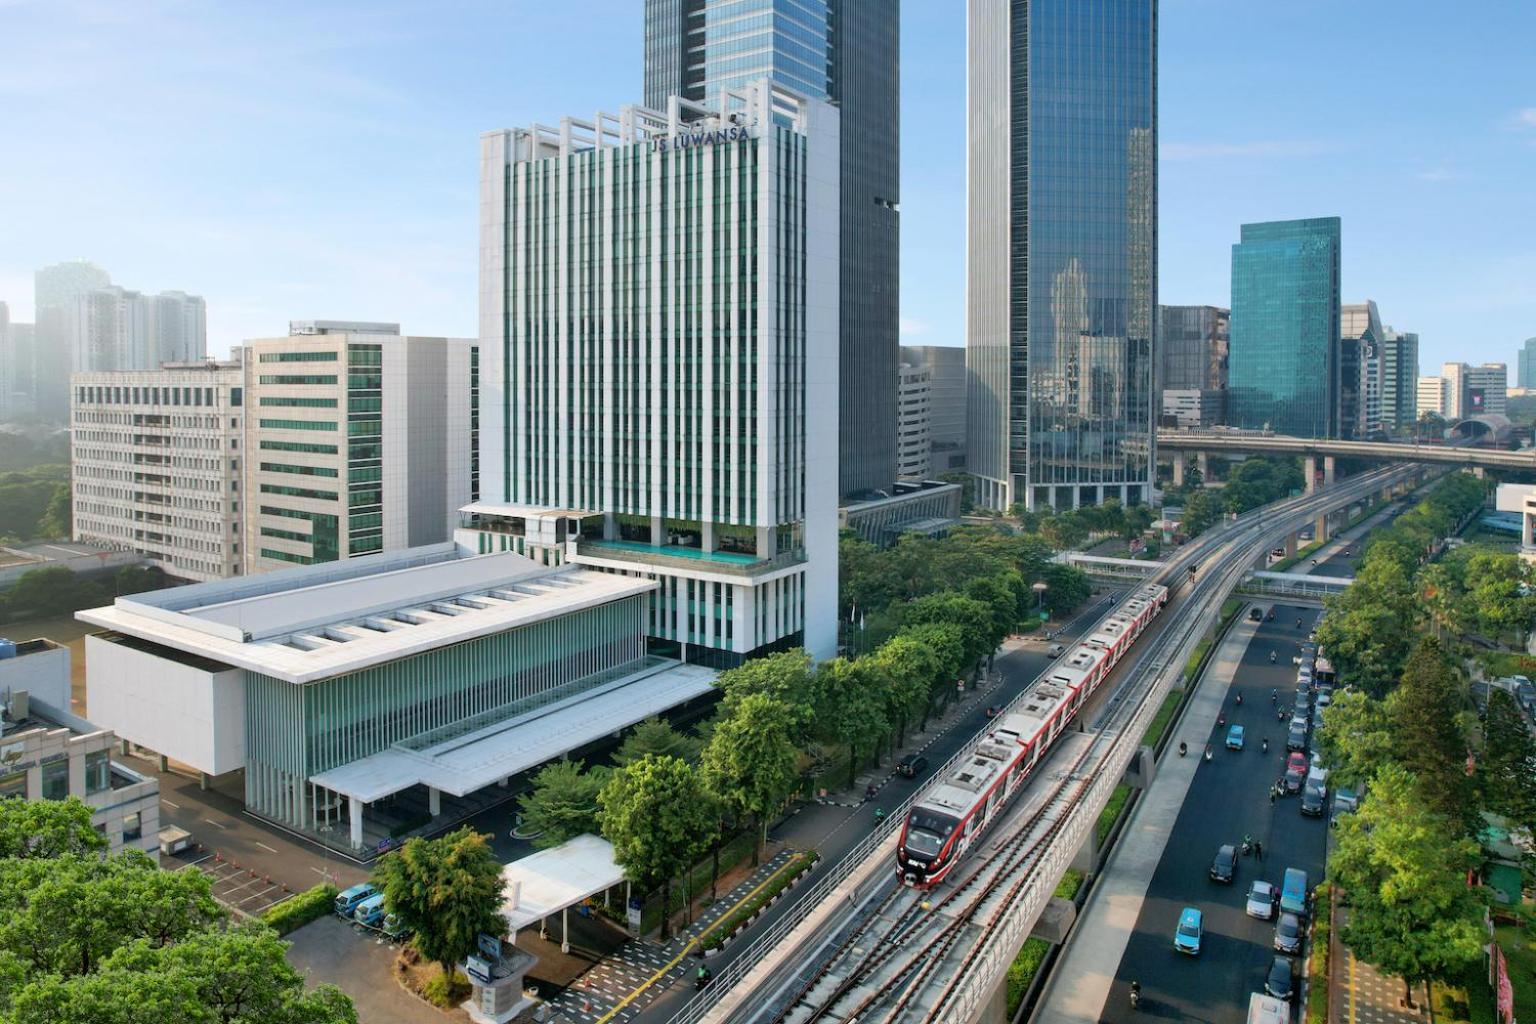 Js Luwansa Hotel & Convention Center Jakarta Kültér fotó